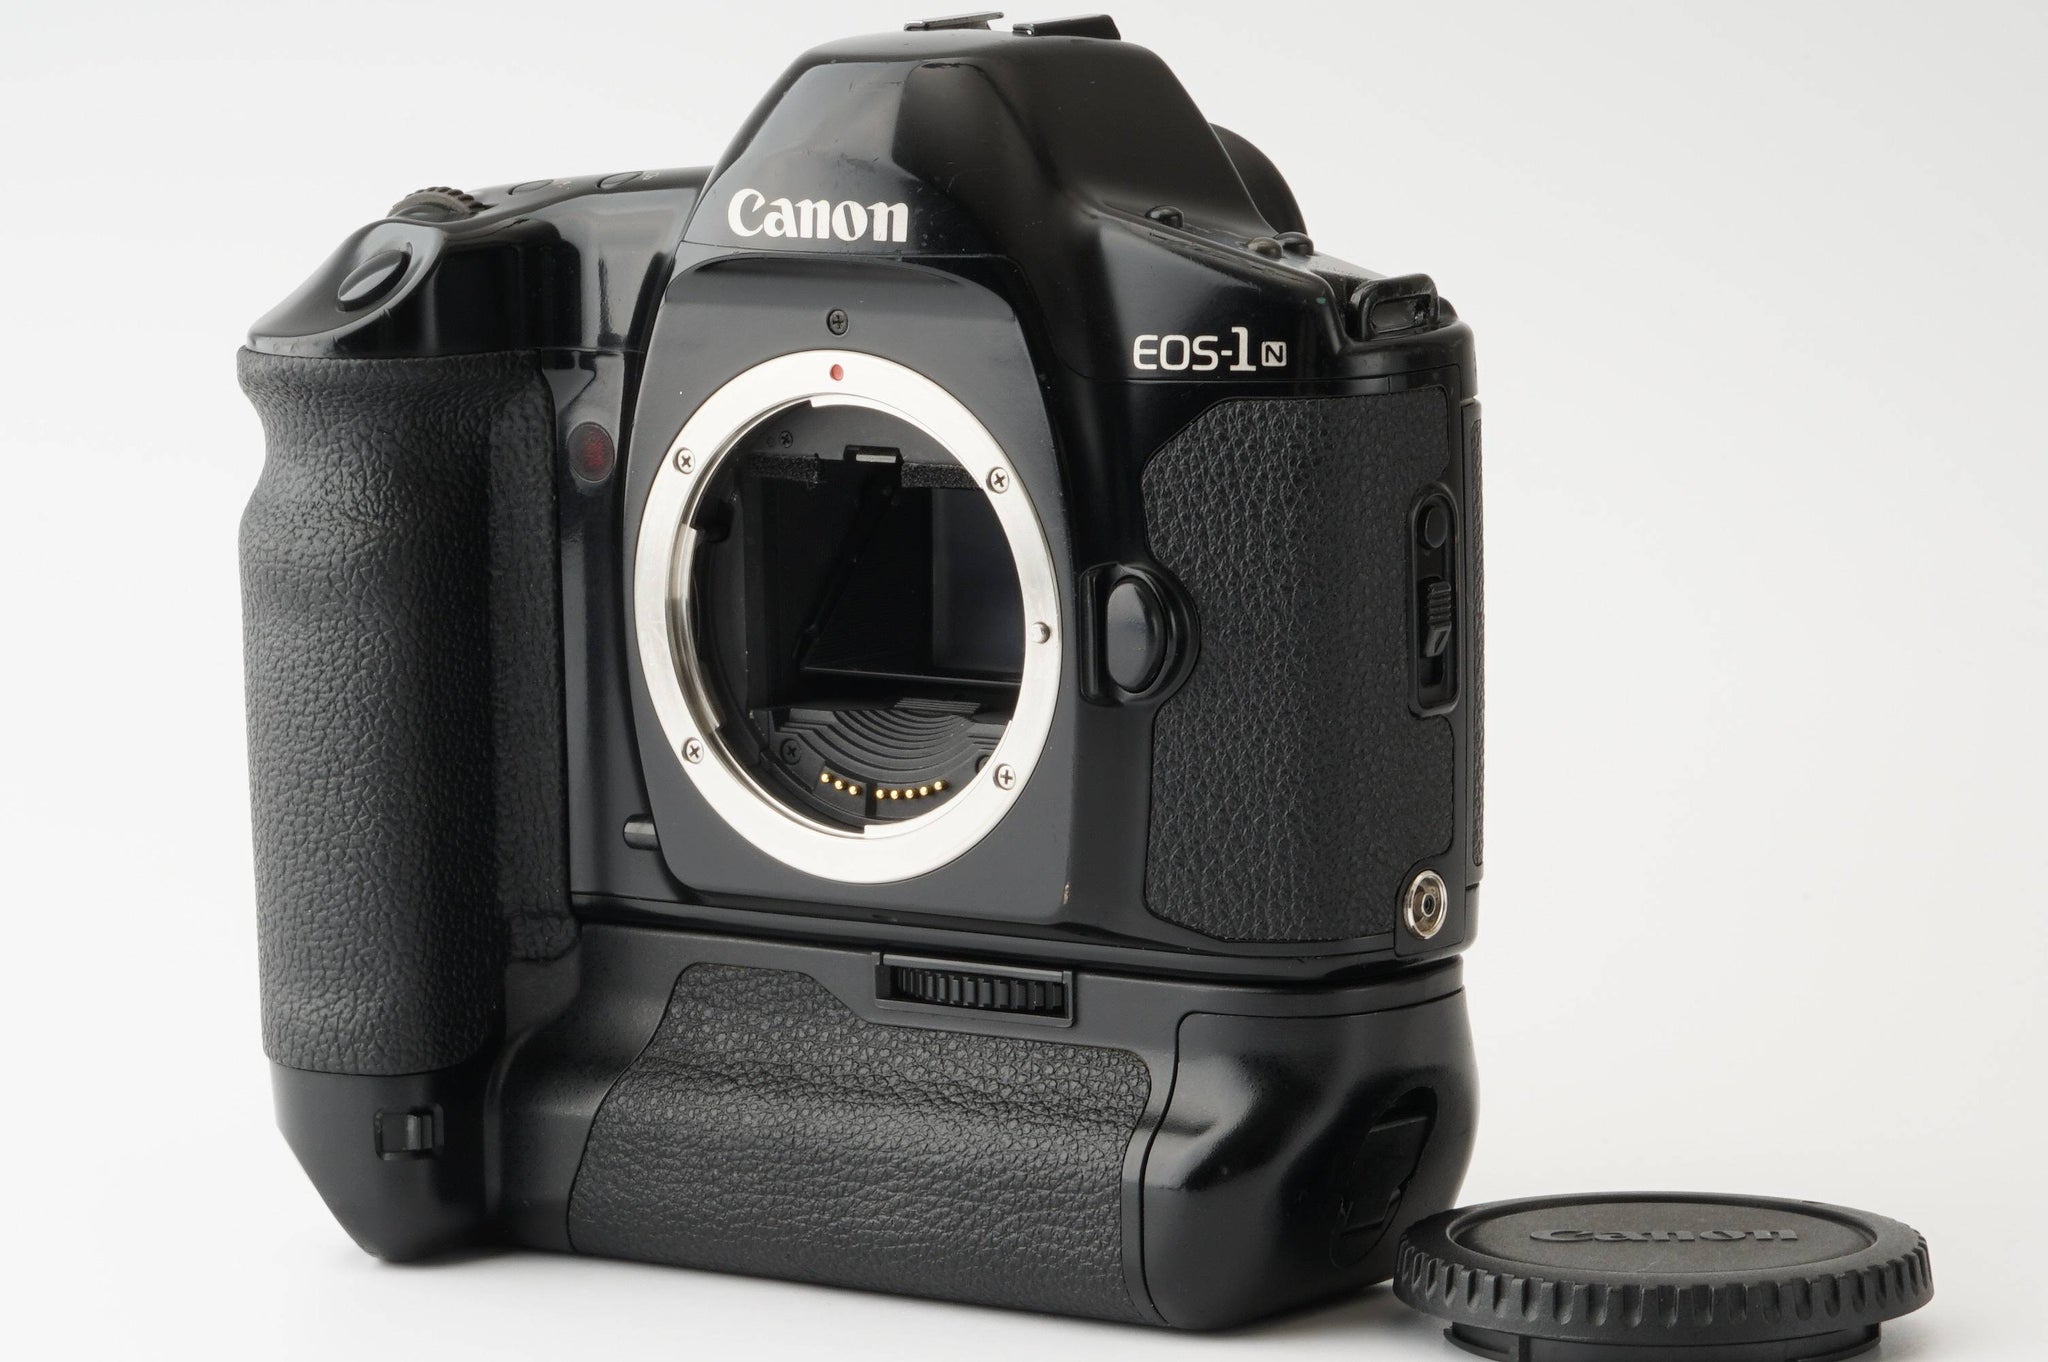 Canon EOS-1N HS Booster E1